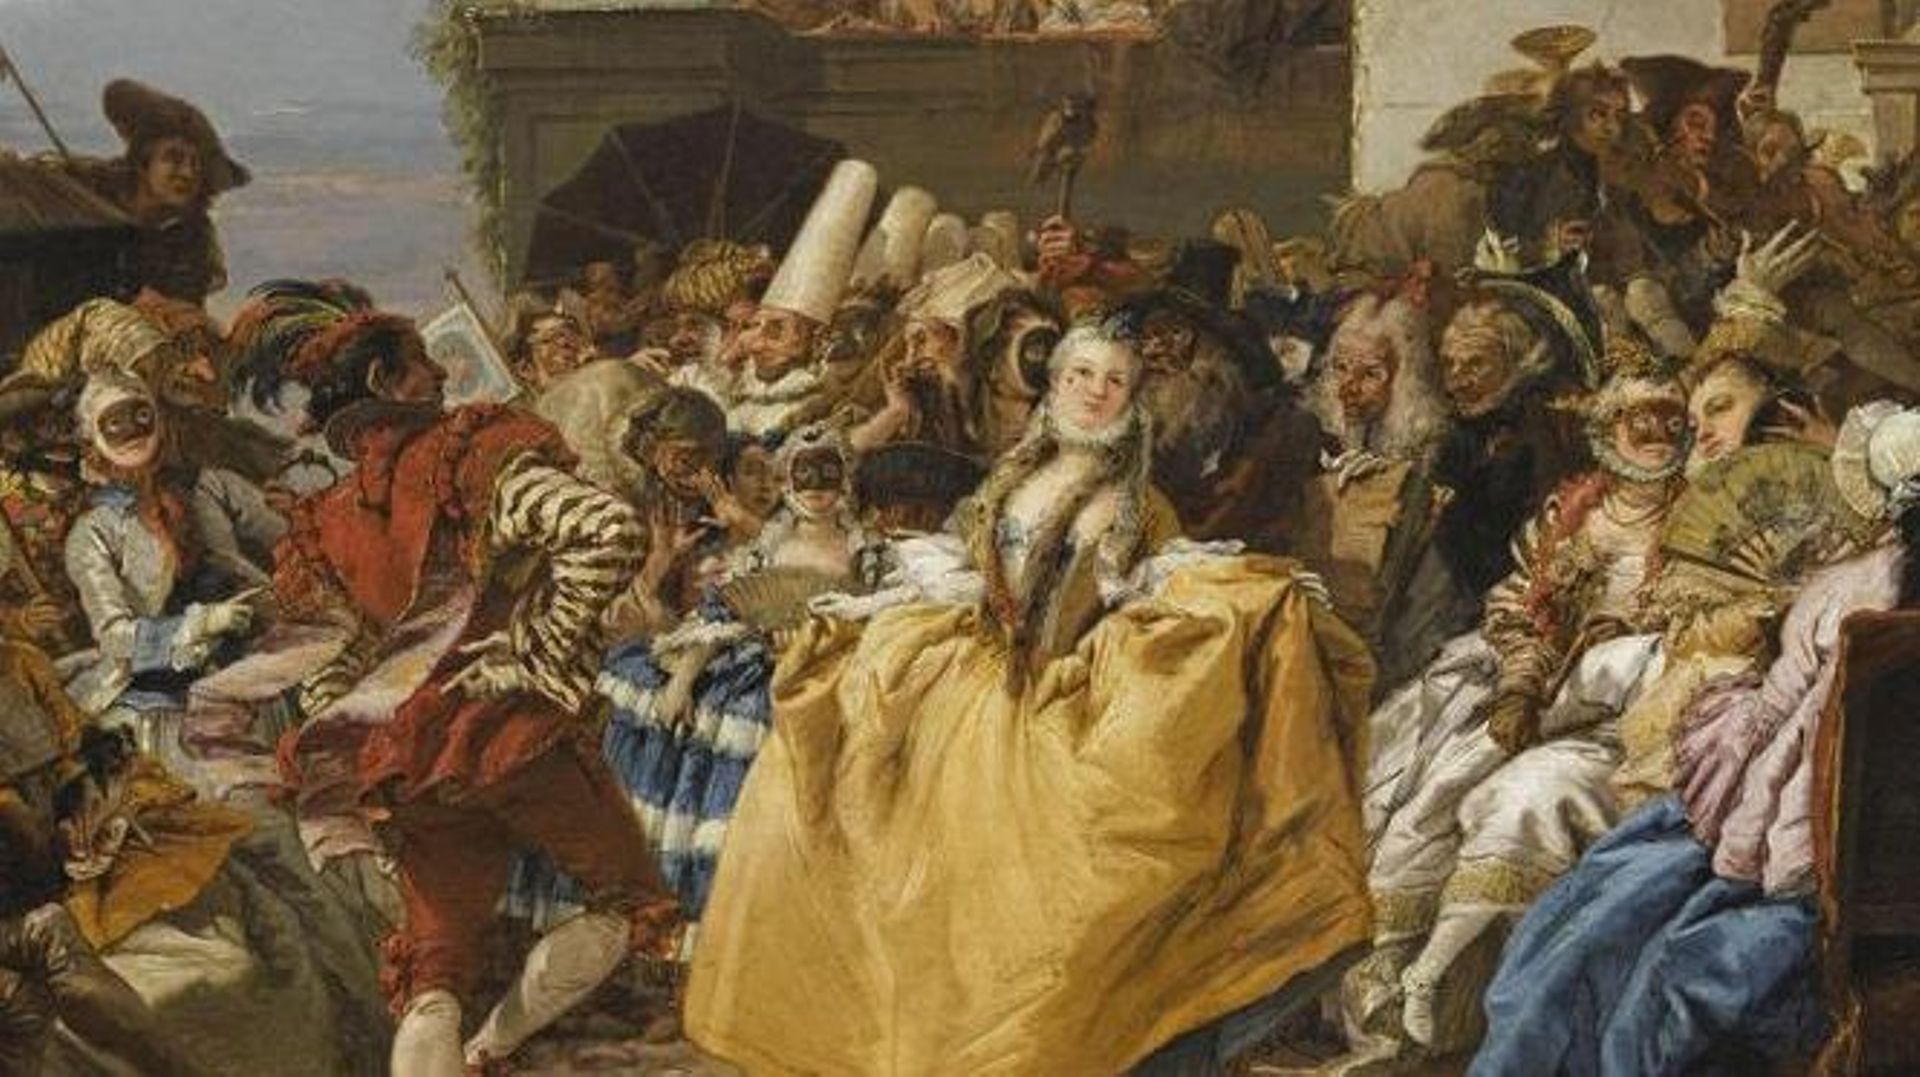 Giandomenico TIEPOLO, Scène de carnaval ou Le Menuet, (détail) 1754-1755 Paris, Musée du Louvre, Département des Peintures